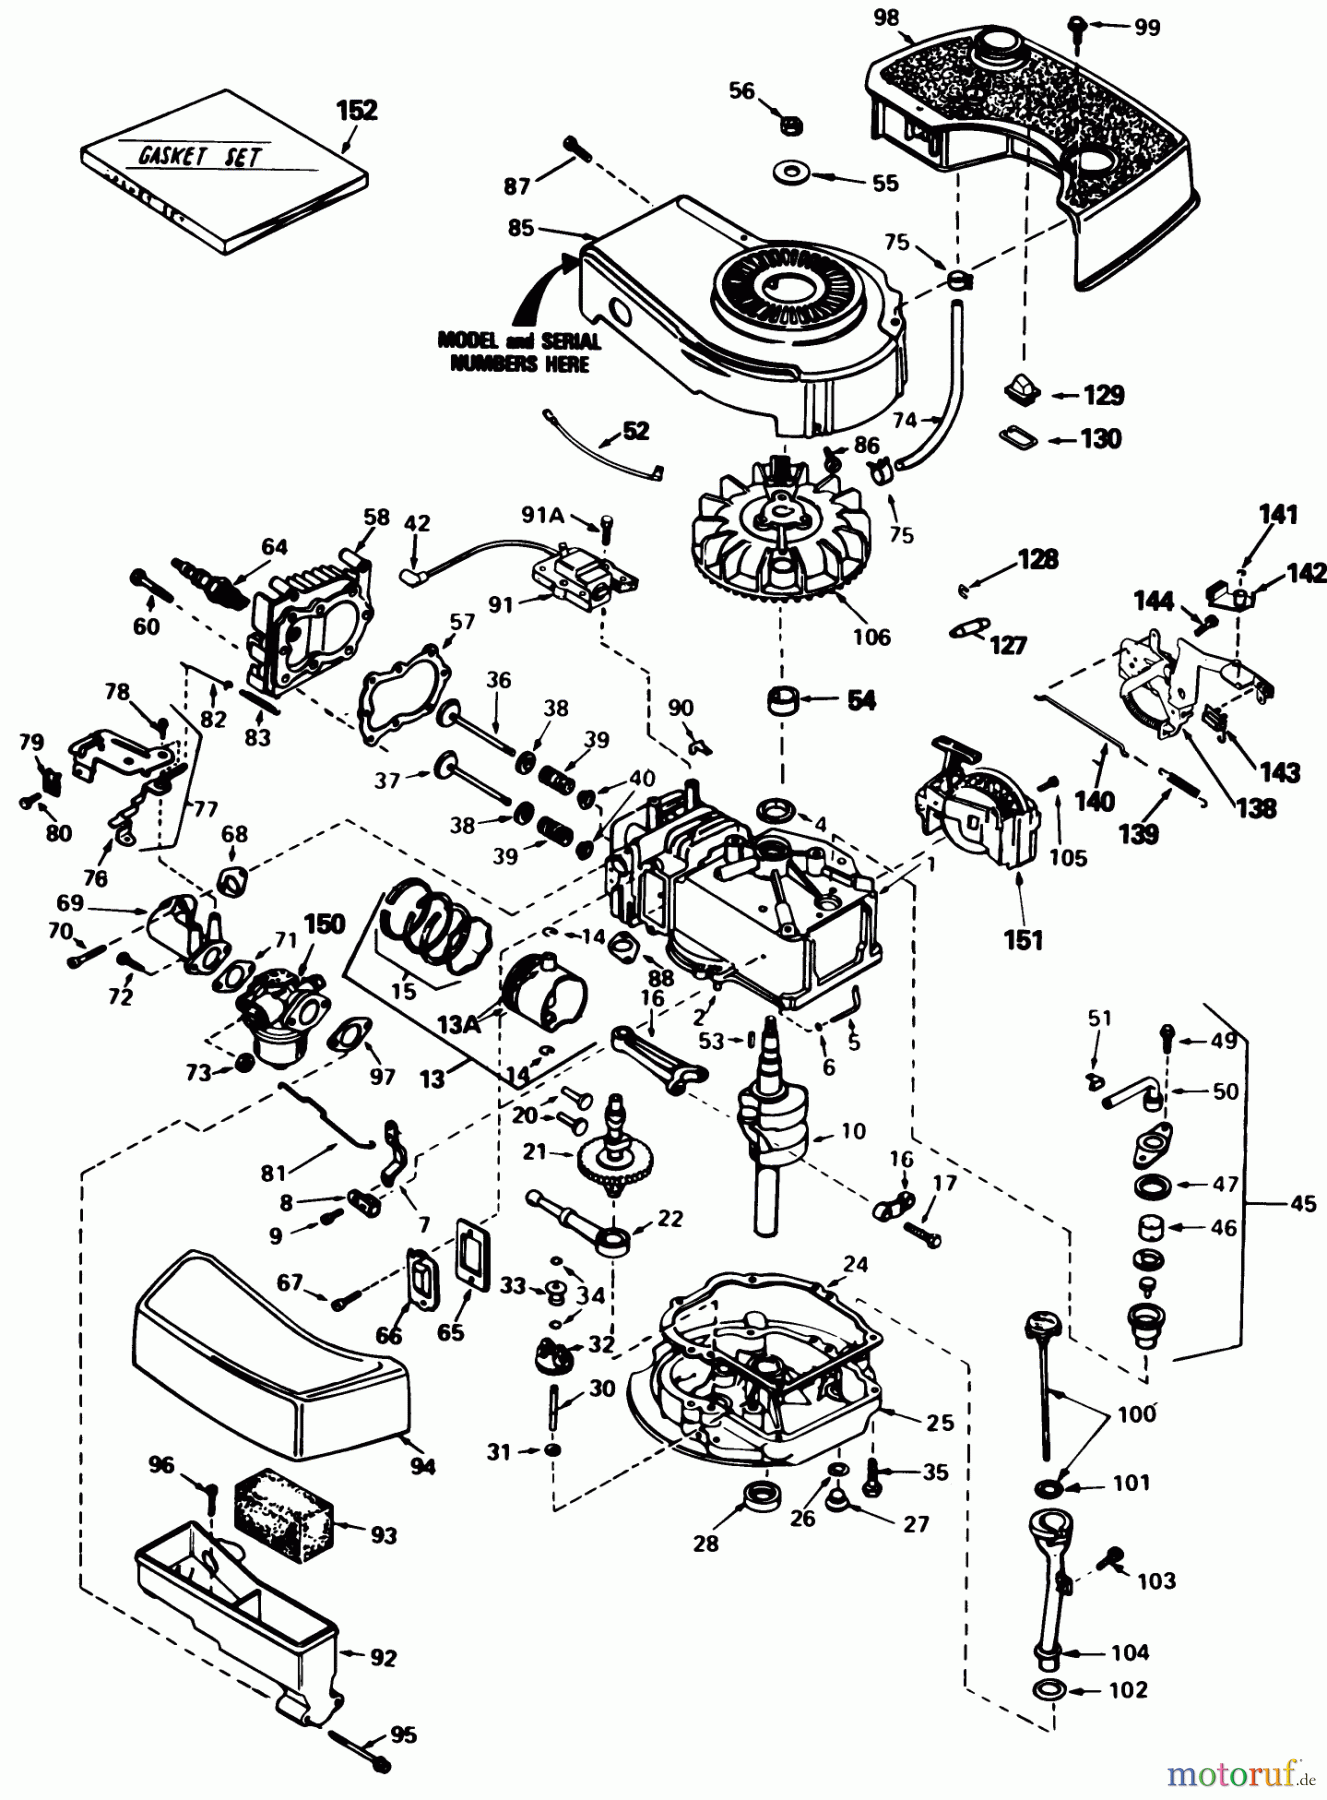  Toro Neu Mowers, Walk-Behind Seite 1 20577 - Toro Lawnmower, 1985 (5000001-5999999) ENGINE TECUMSEH MODEL TNT100-10085E